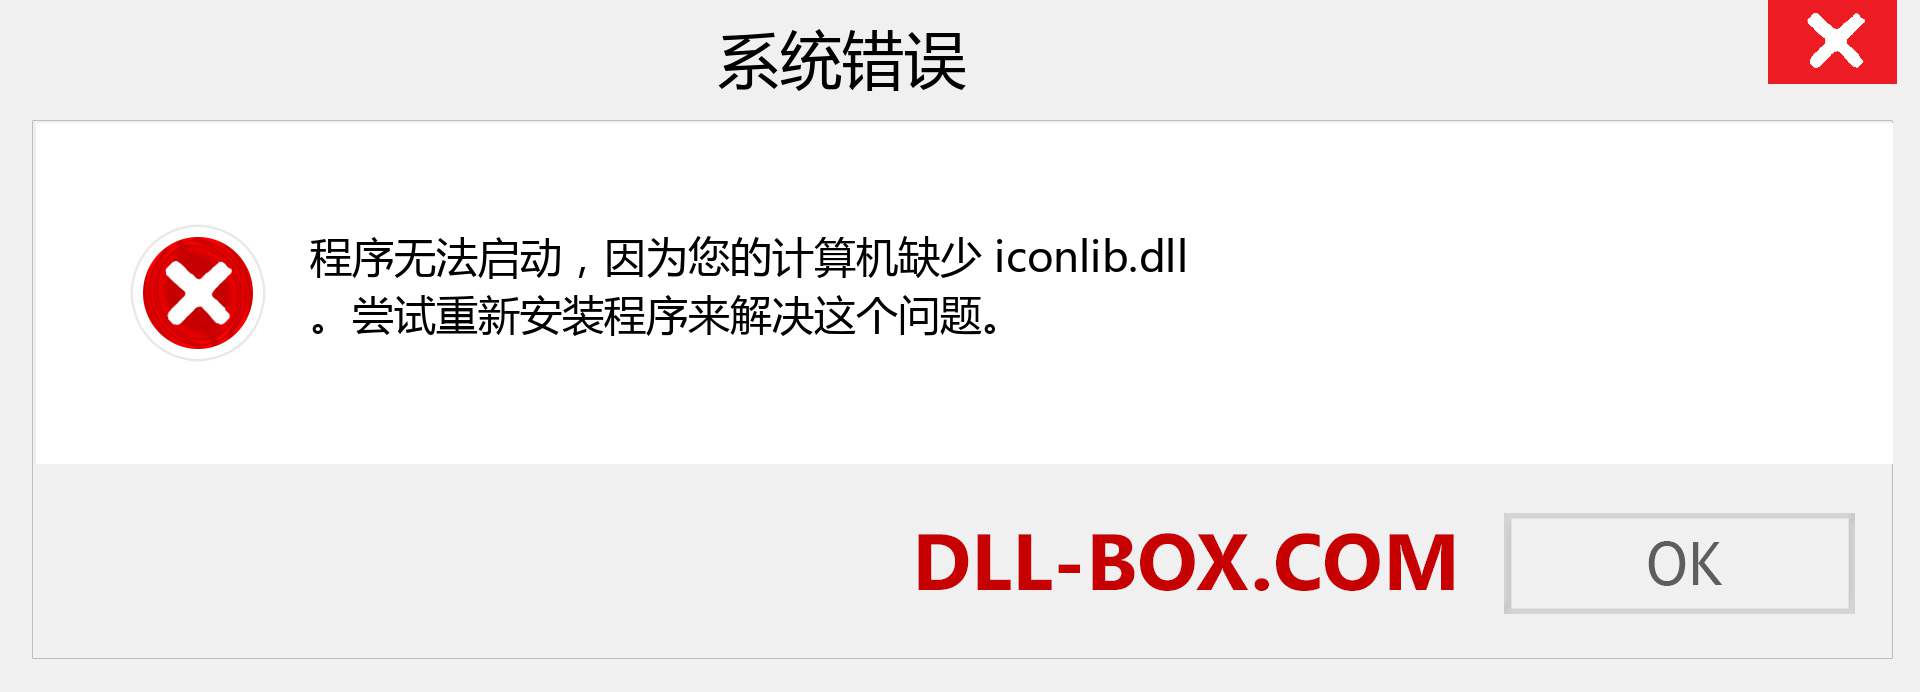 iconlib.dll 文件丢失？。 适用于 Windows 7、8、10 的下载 - 修复 Windows、照片、图像上的 iconlib dll 丢失错误